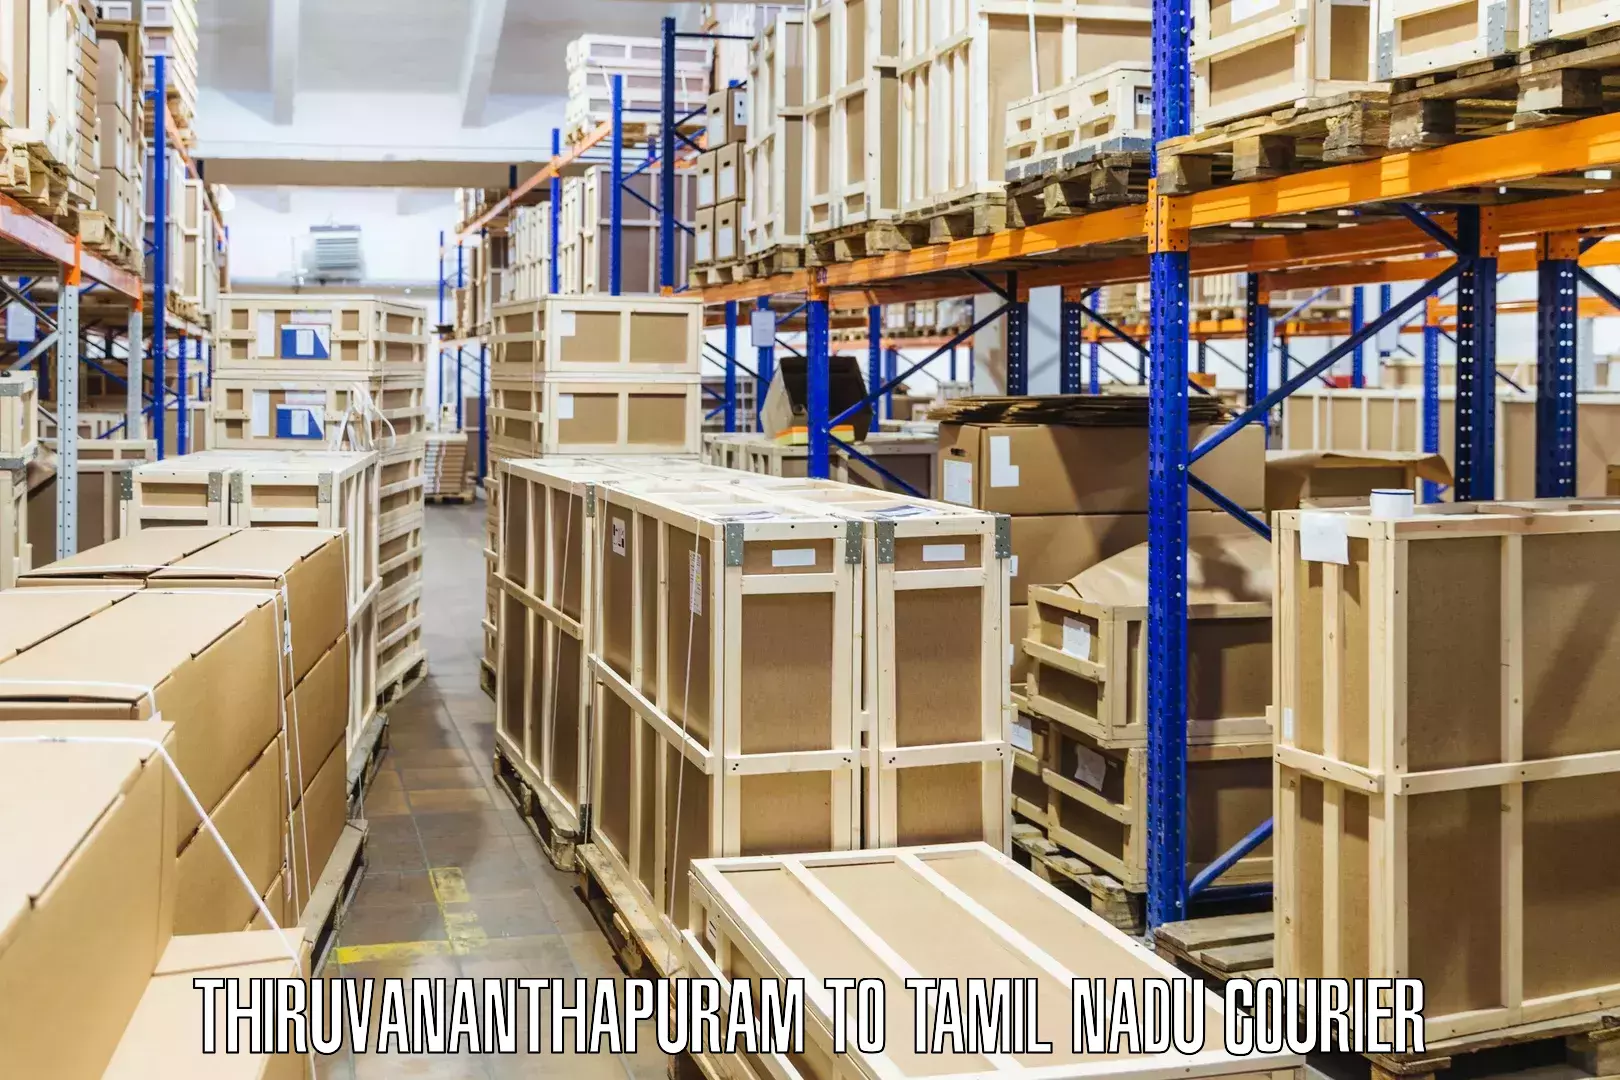 Efficient freight service Thiruvananthapuram to Tamil Nadu